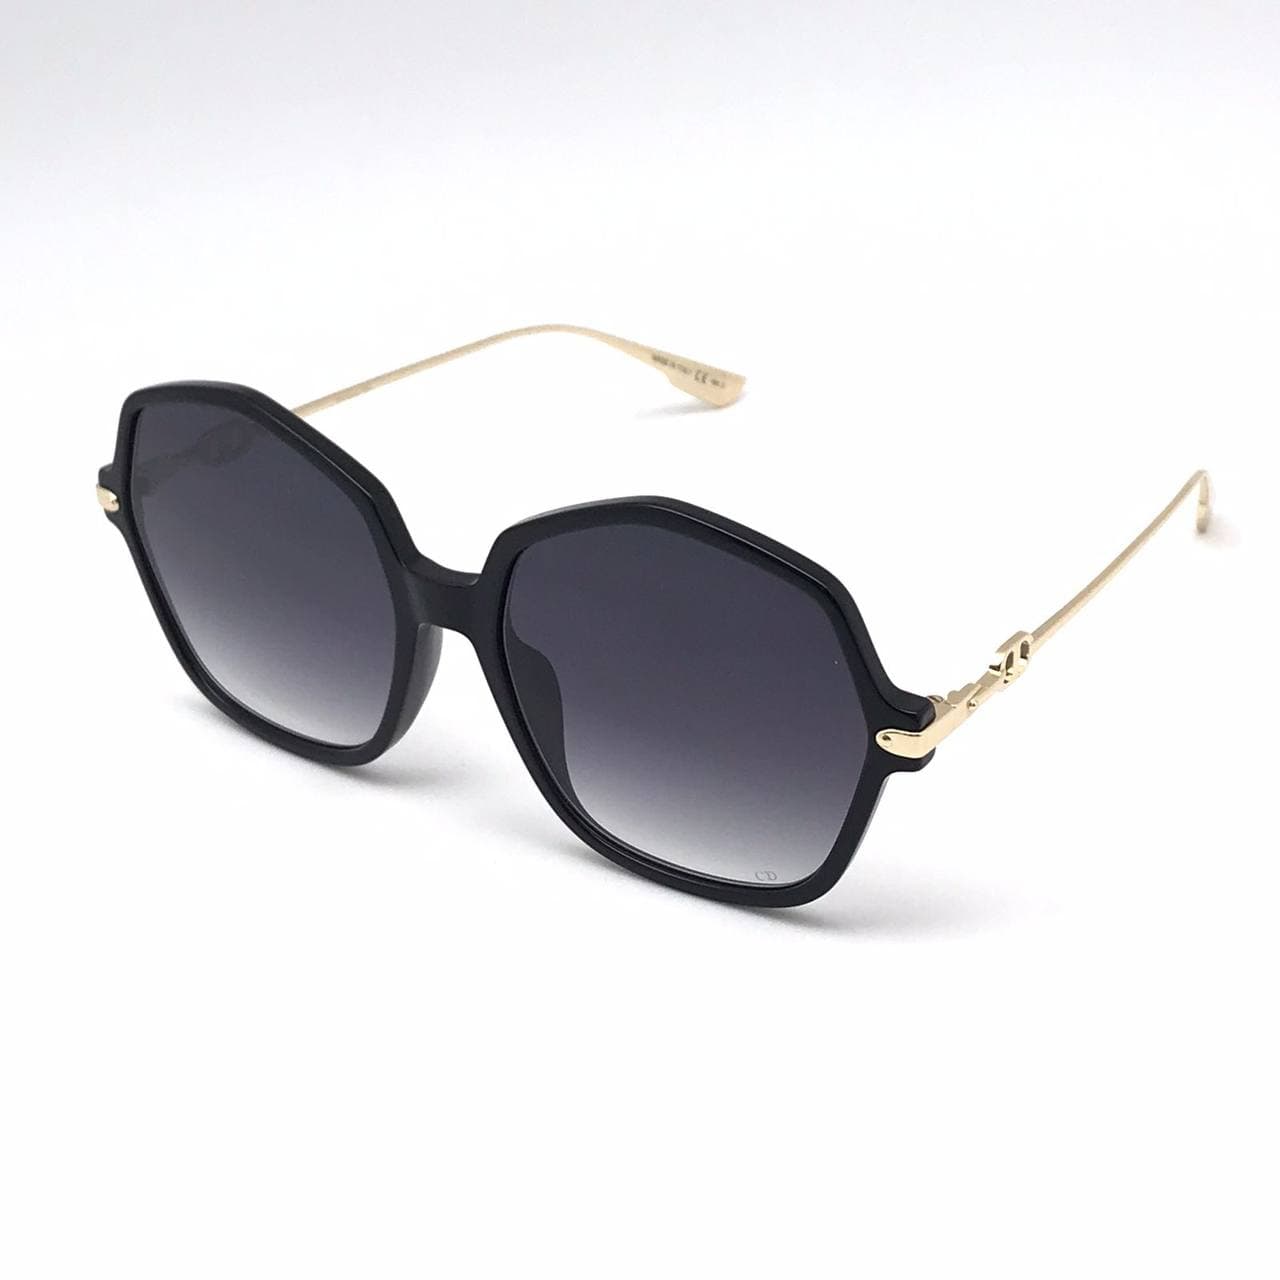 Очки кристиан диор. Christian Dior очки солнцезащитные. Очки диор. Очки Кристиан диор 1971 56-139 c1 цена.